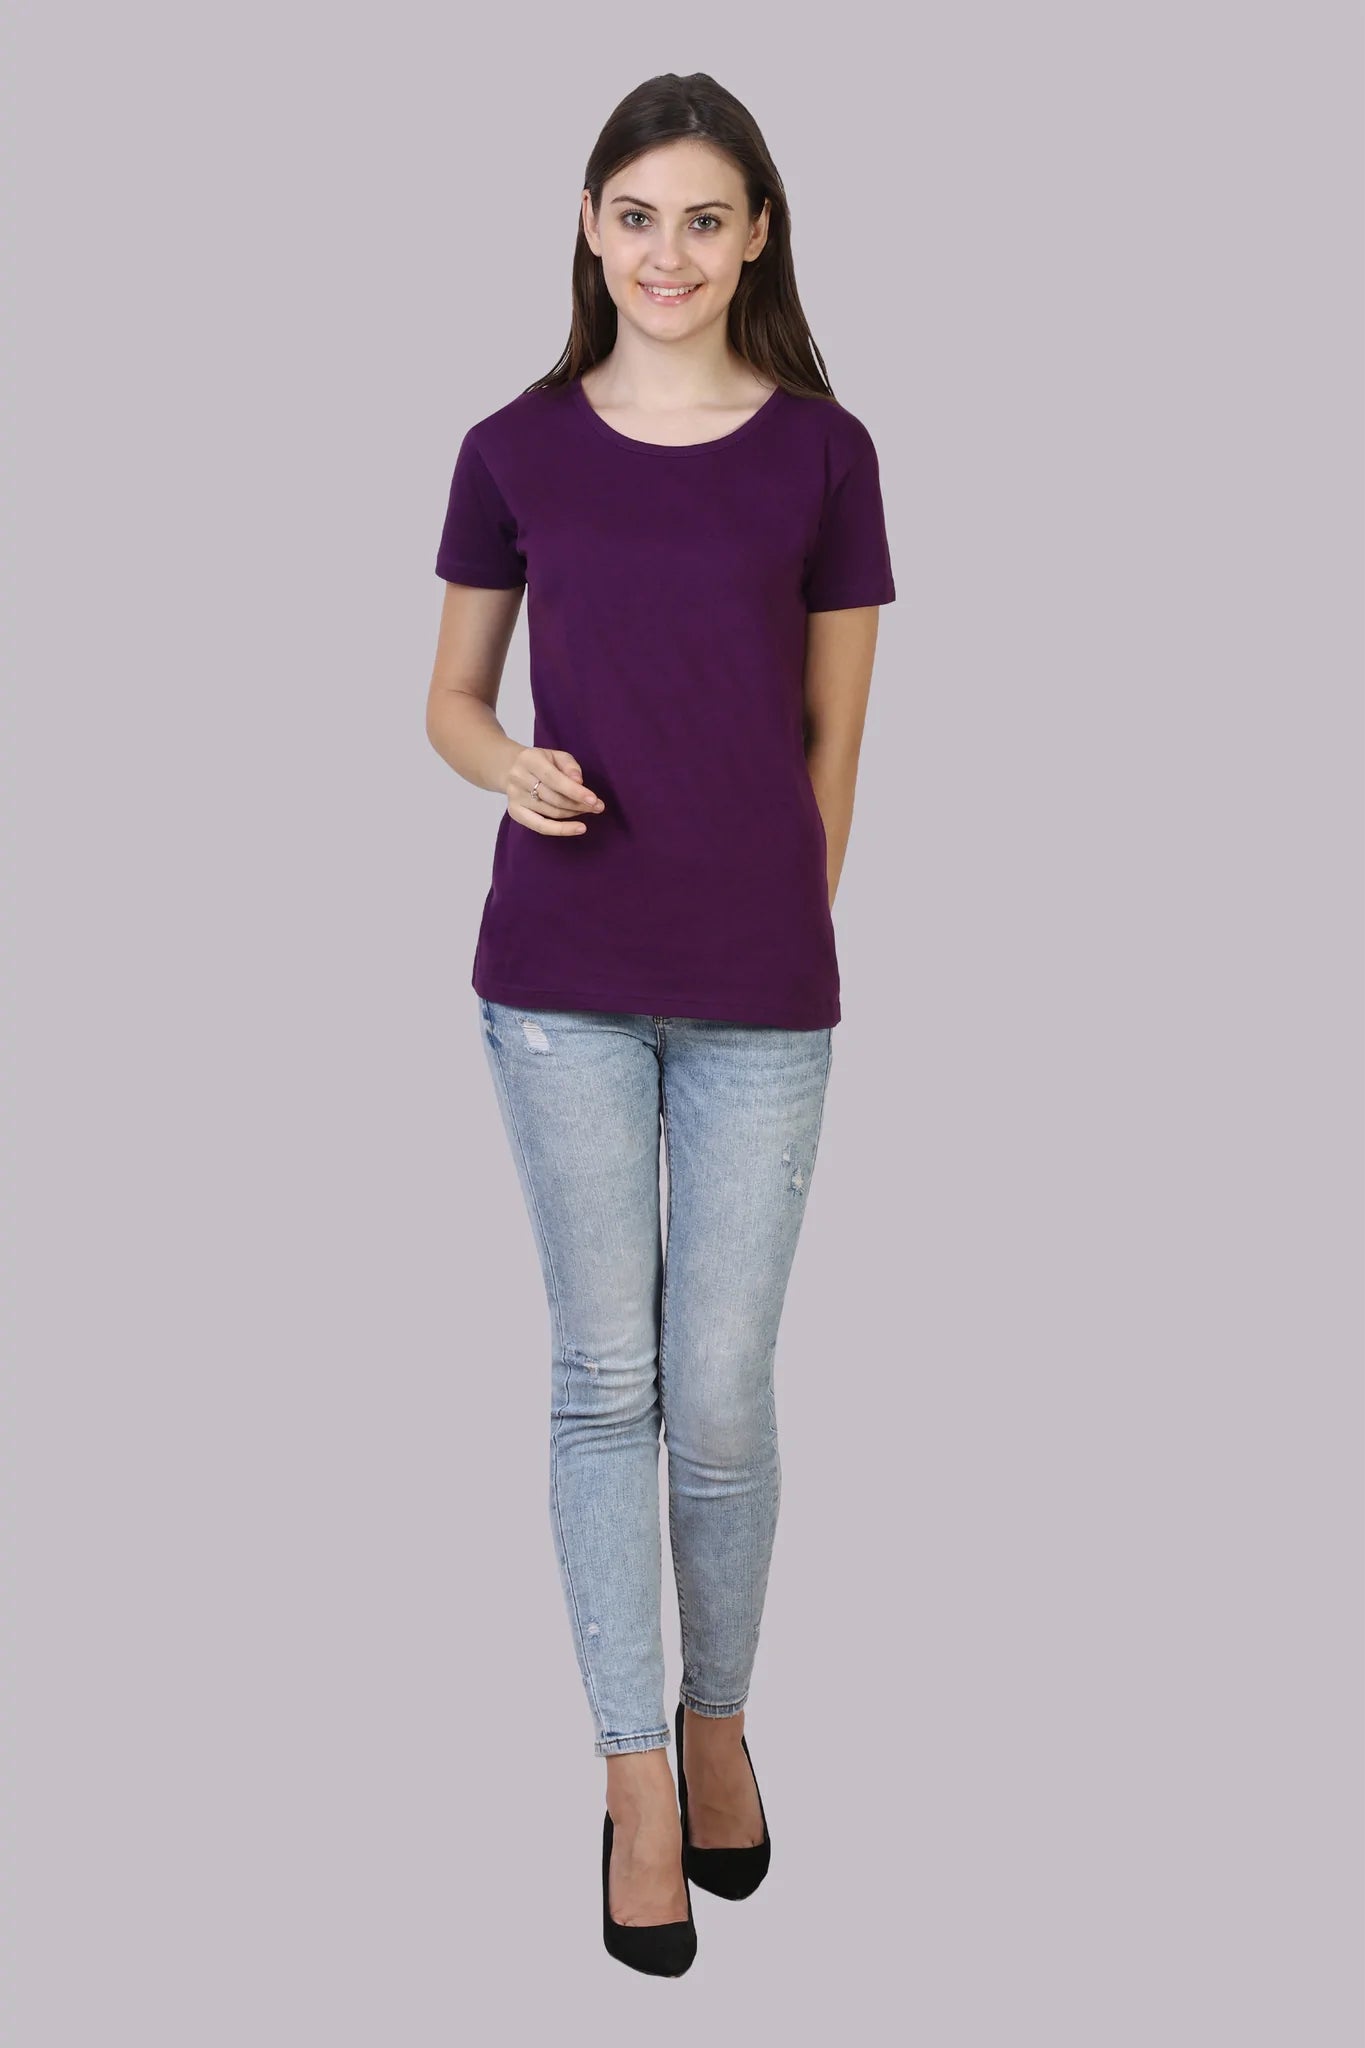 Women's Cotton Plain Round Neck Half Sleeve Purple Color T-Shirt